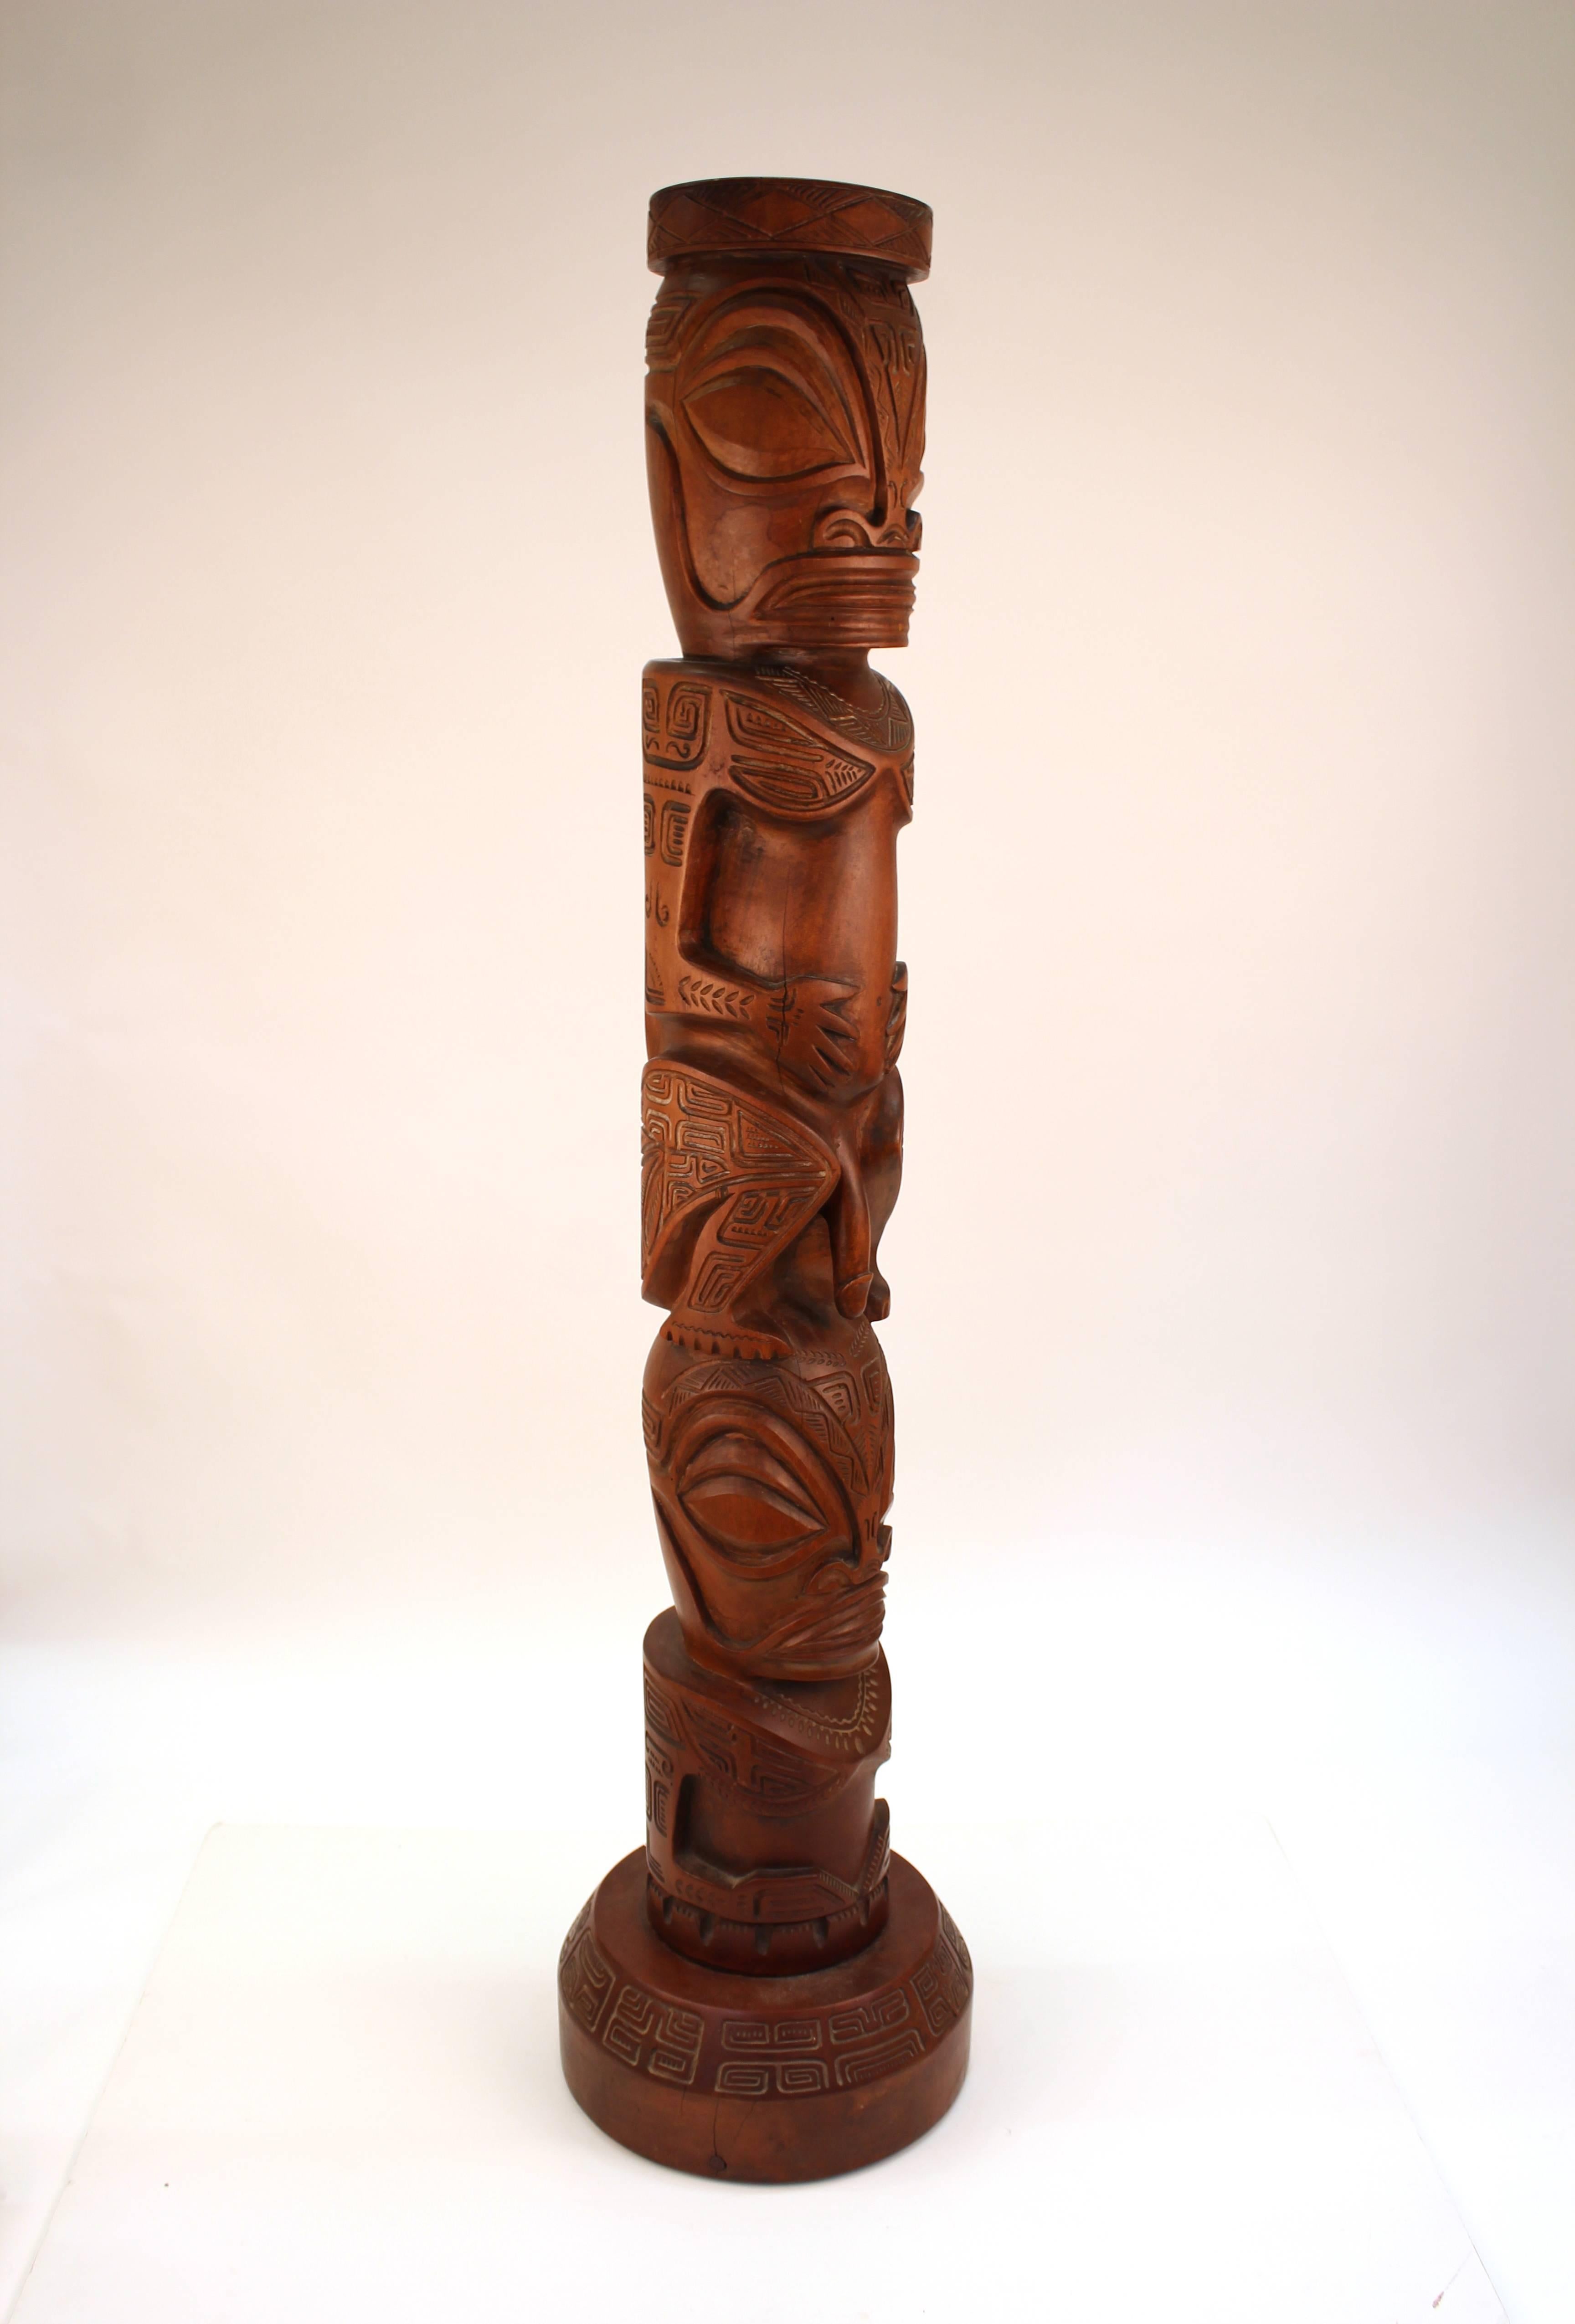 Dekorative TOTEM-Skulptur nach dem Stil der Marquesas-Inseln. Gefertigt aus geschnitztem Holz mit einer nackten menschlichen Figur, die auf einem anderen Akt sitzt, der in der Taille endet. Die Skulptur steht auf einem umlaufenden Sockel und ist mit